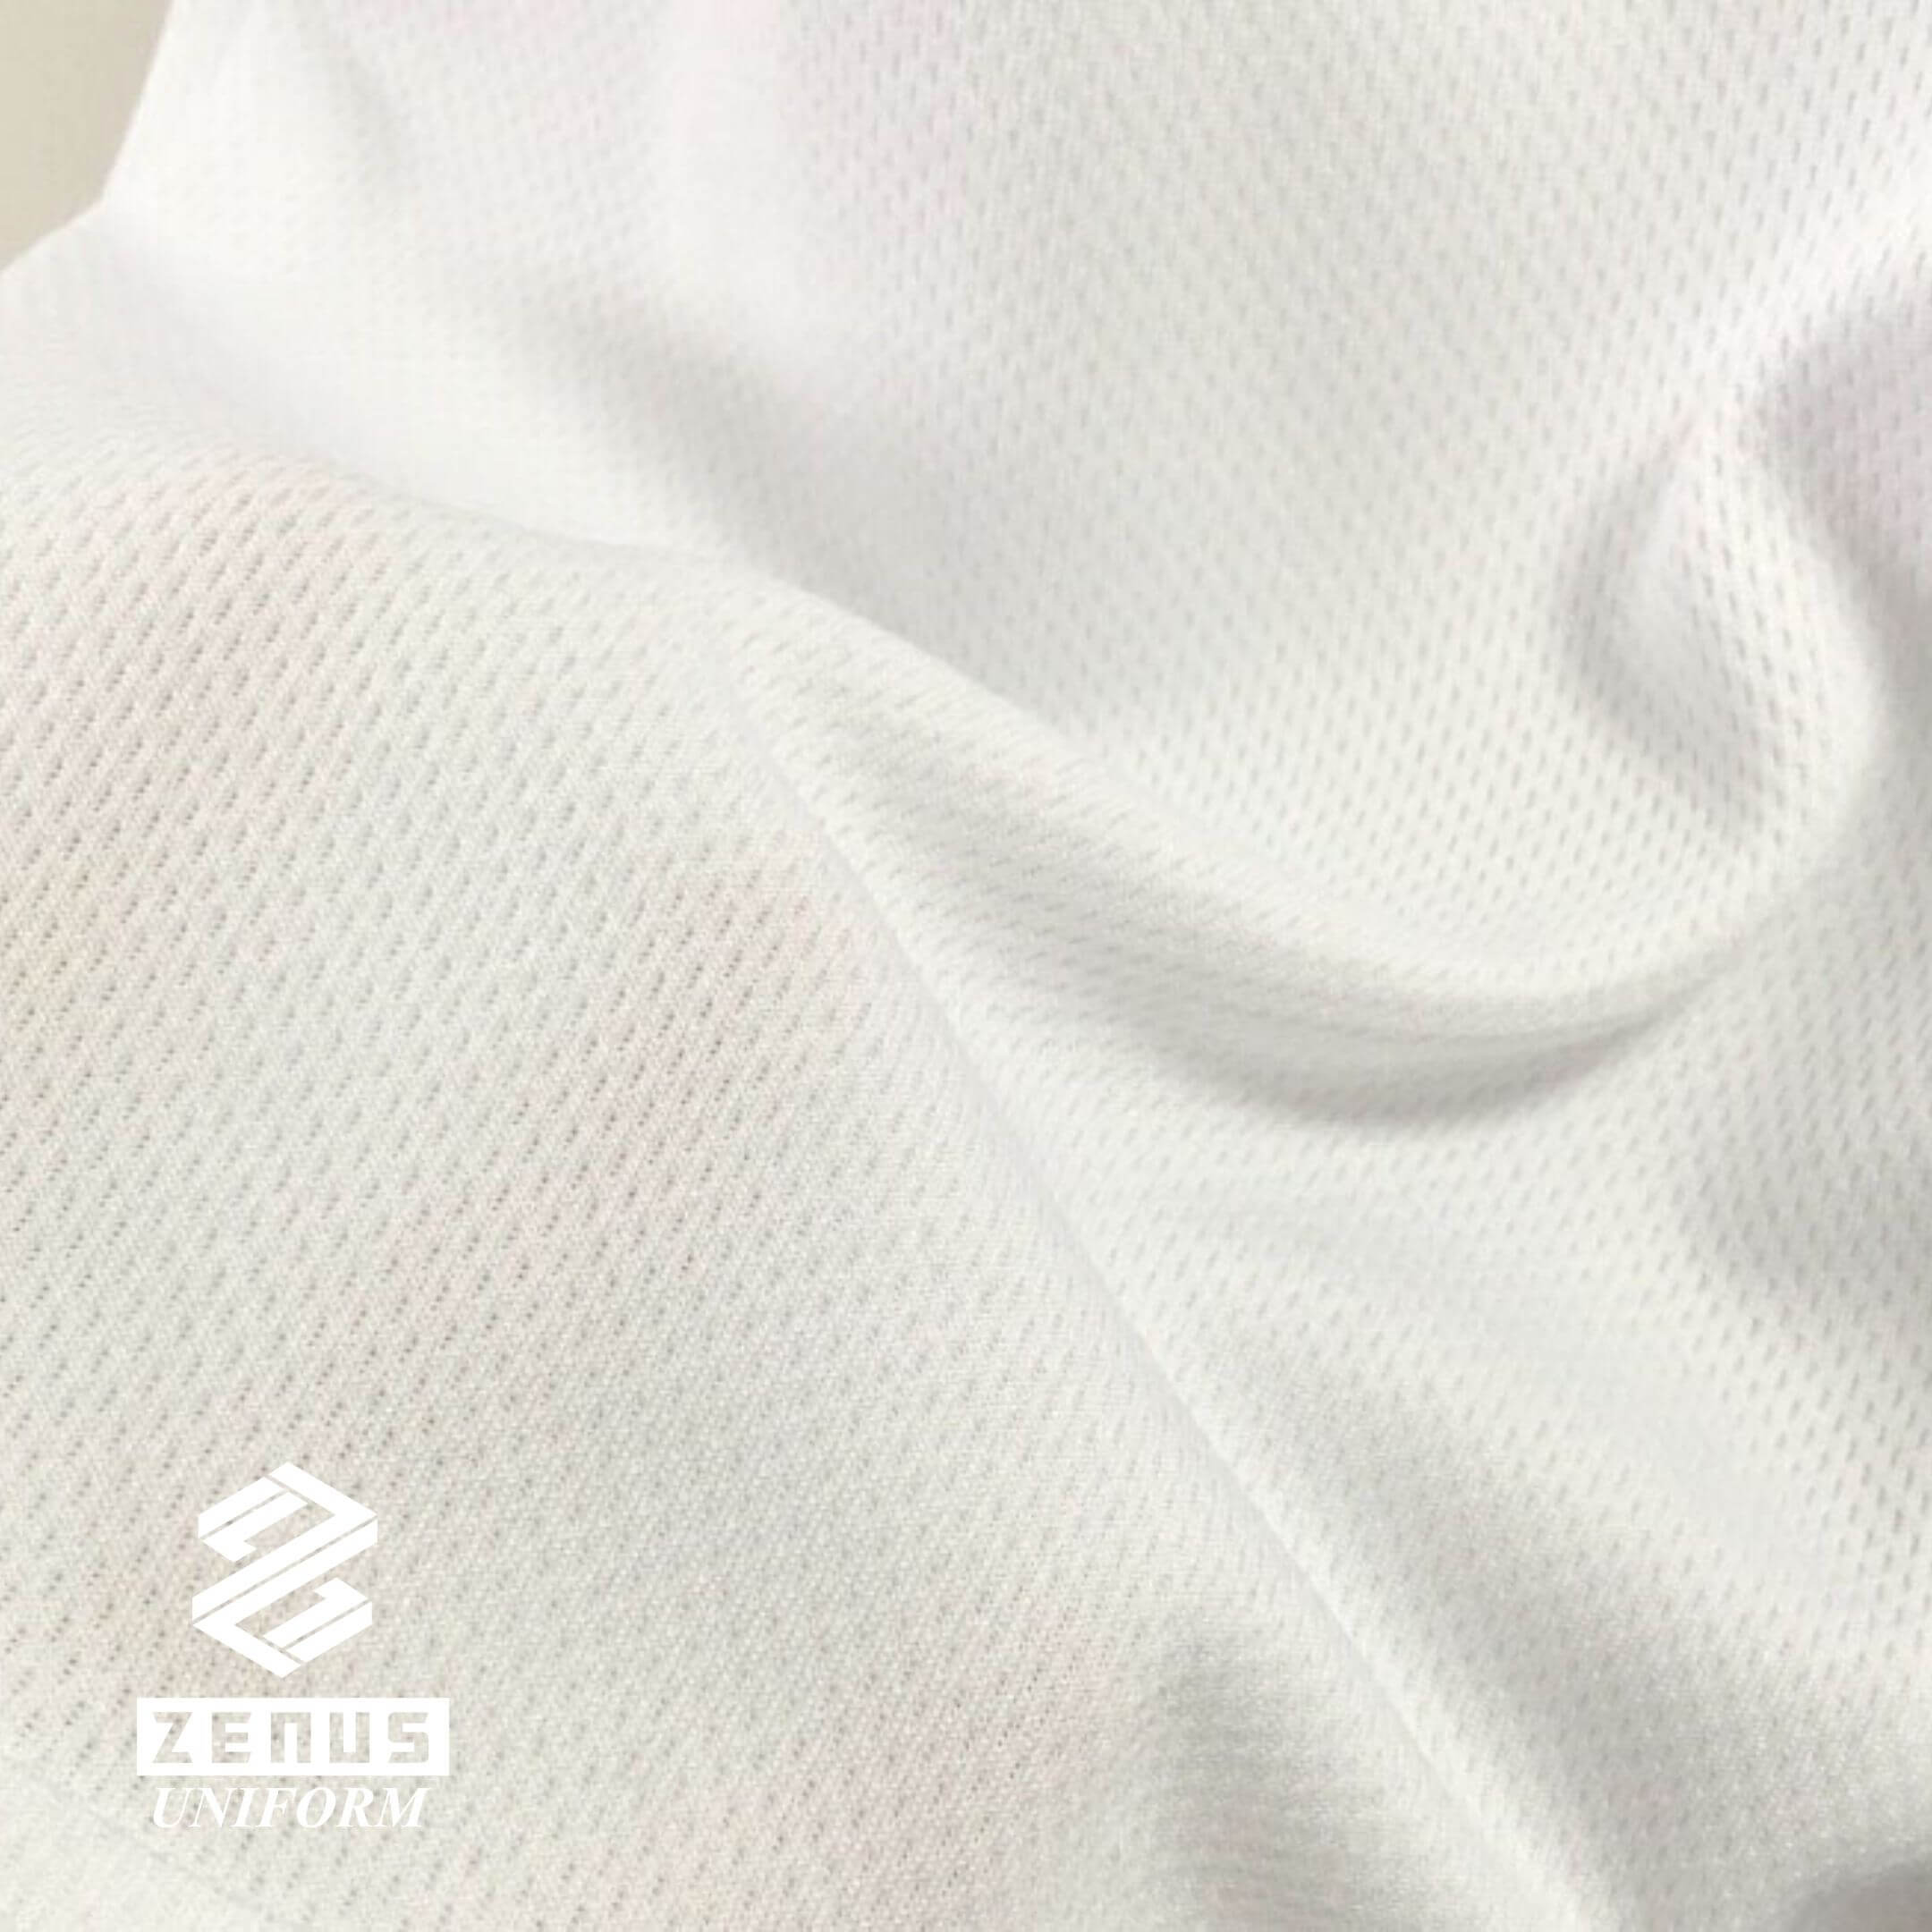 保齡球衫, 保齡球衣 Zenus Uniform -fabric01